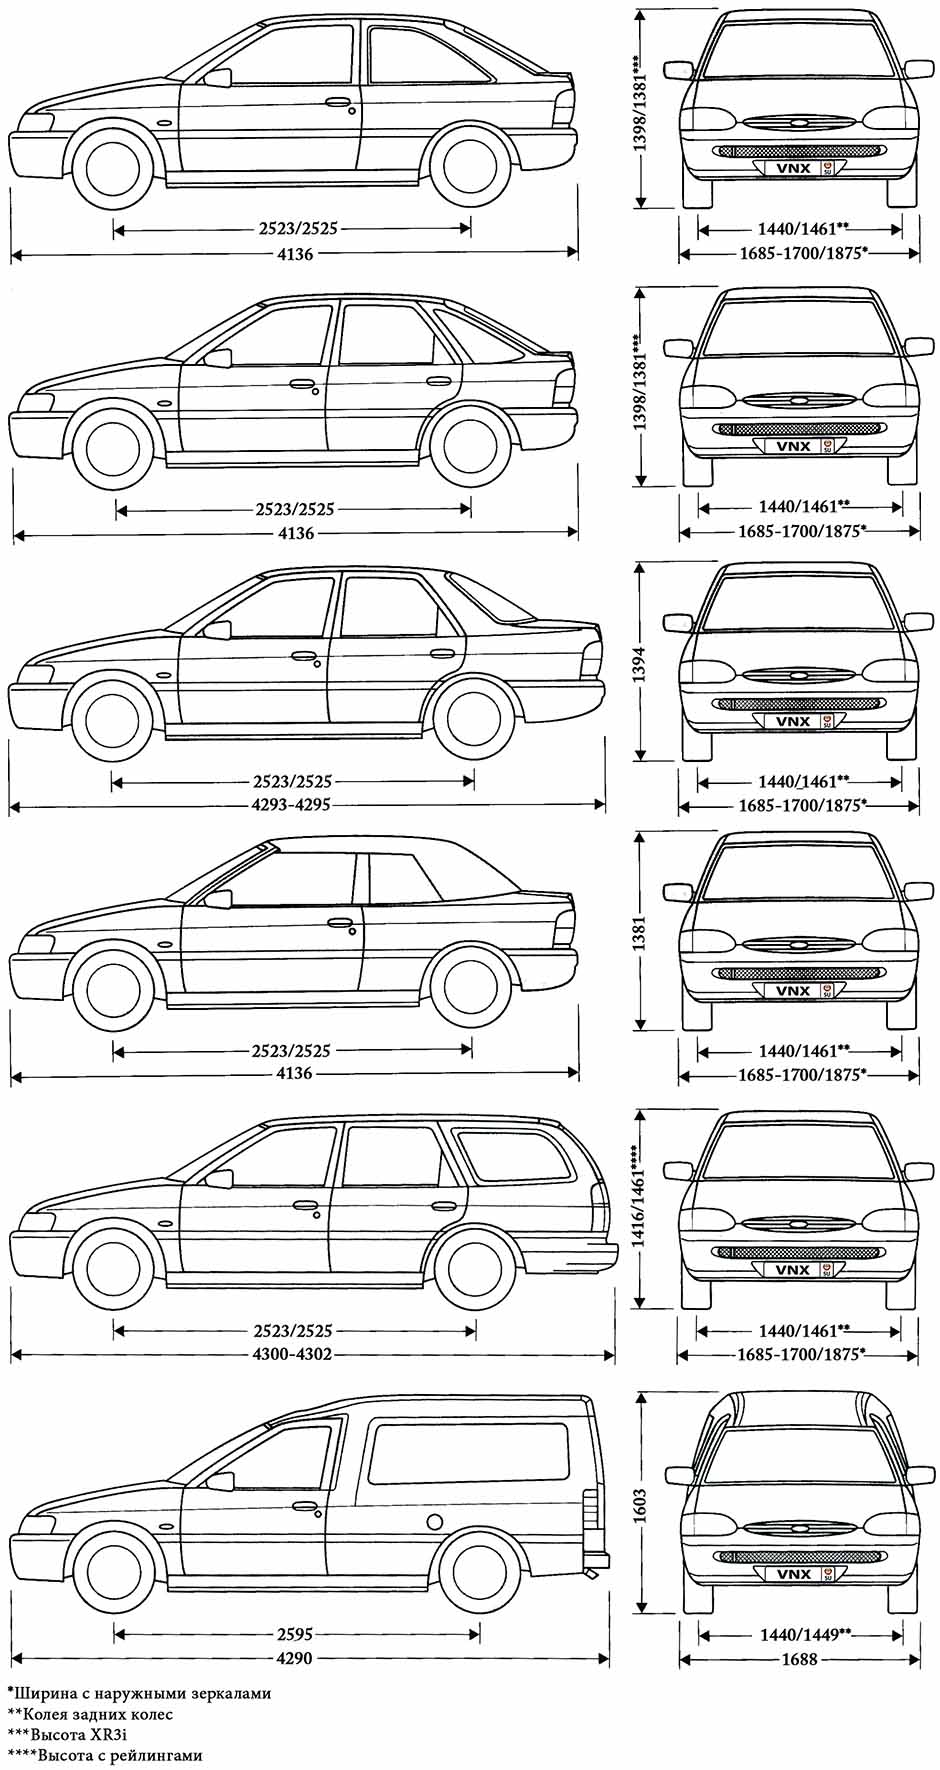 Ford Escort - технические характеристики и комплектации